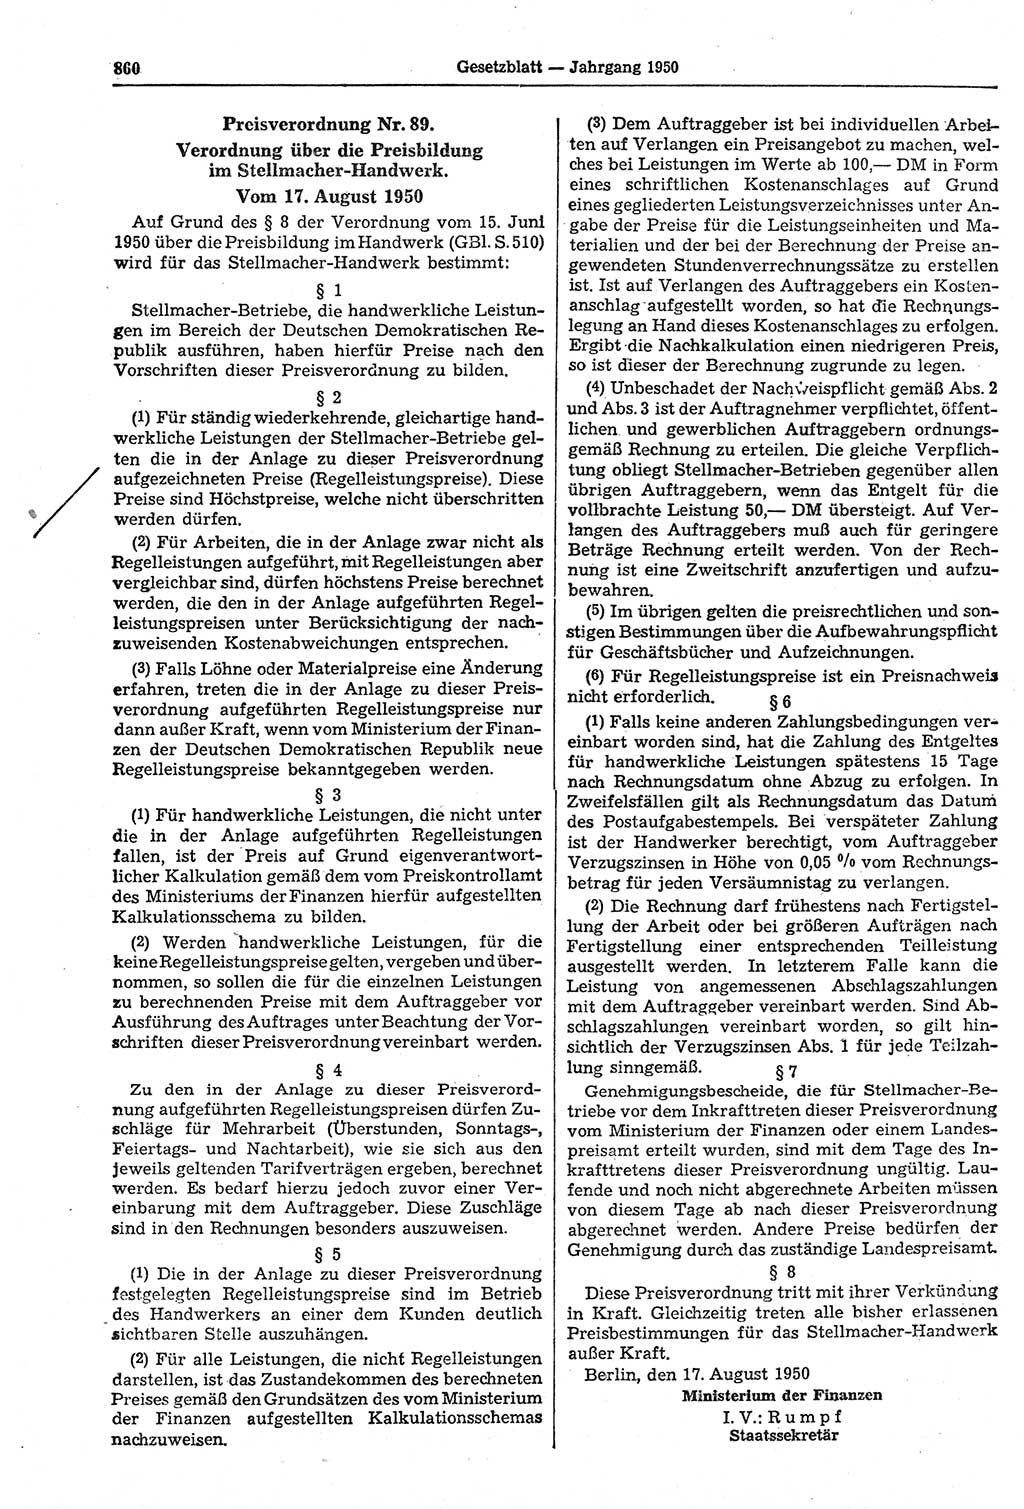 Gesetzblatt (GBl.) der Deutschen Demokratischen Republik (DDR) 1950, Seite 860 (GBl. DDR 1950, S. 860)